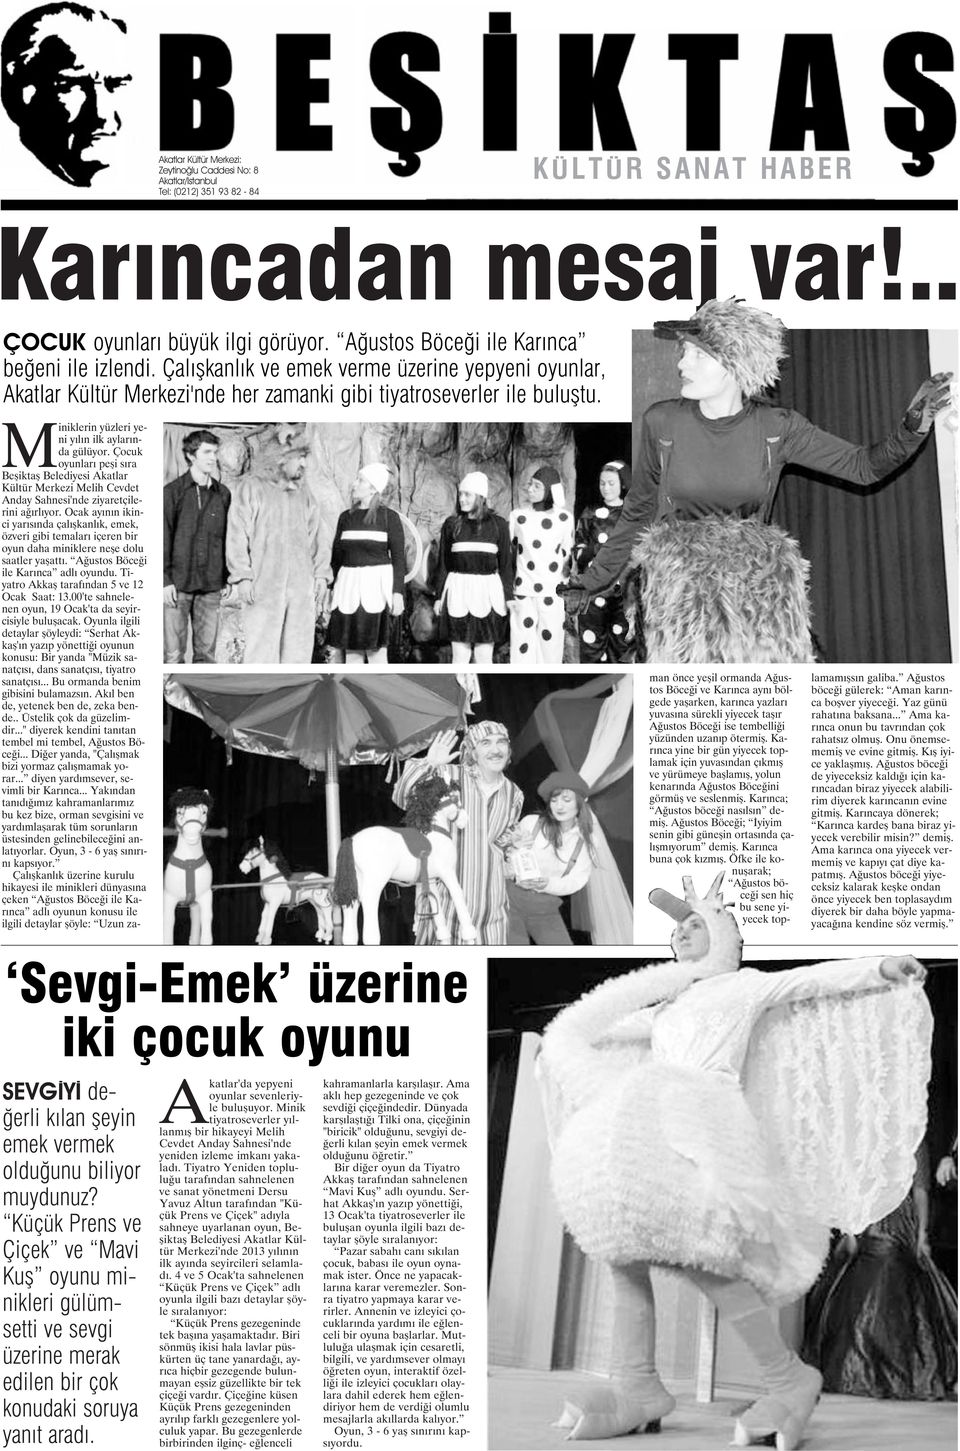 Miniklerin yüzleri yeni yılın ilk aylarında gülüyor. Çocuk oyunları peşi sıra Beşiktaş Belediyesi Akatlar Kültür Merkezi Melih Cevdet Anday Sahnesi'nde ziyaretçilerini ağırlıyor.